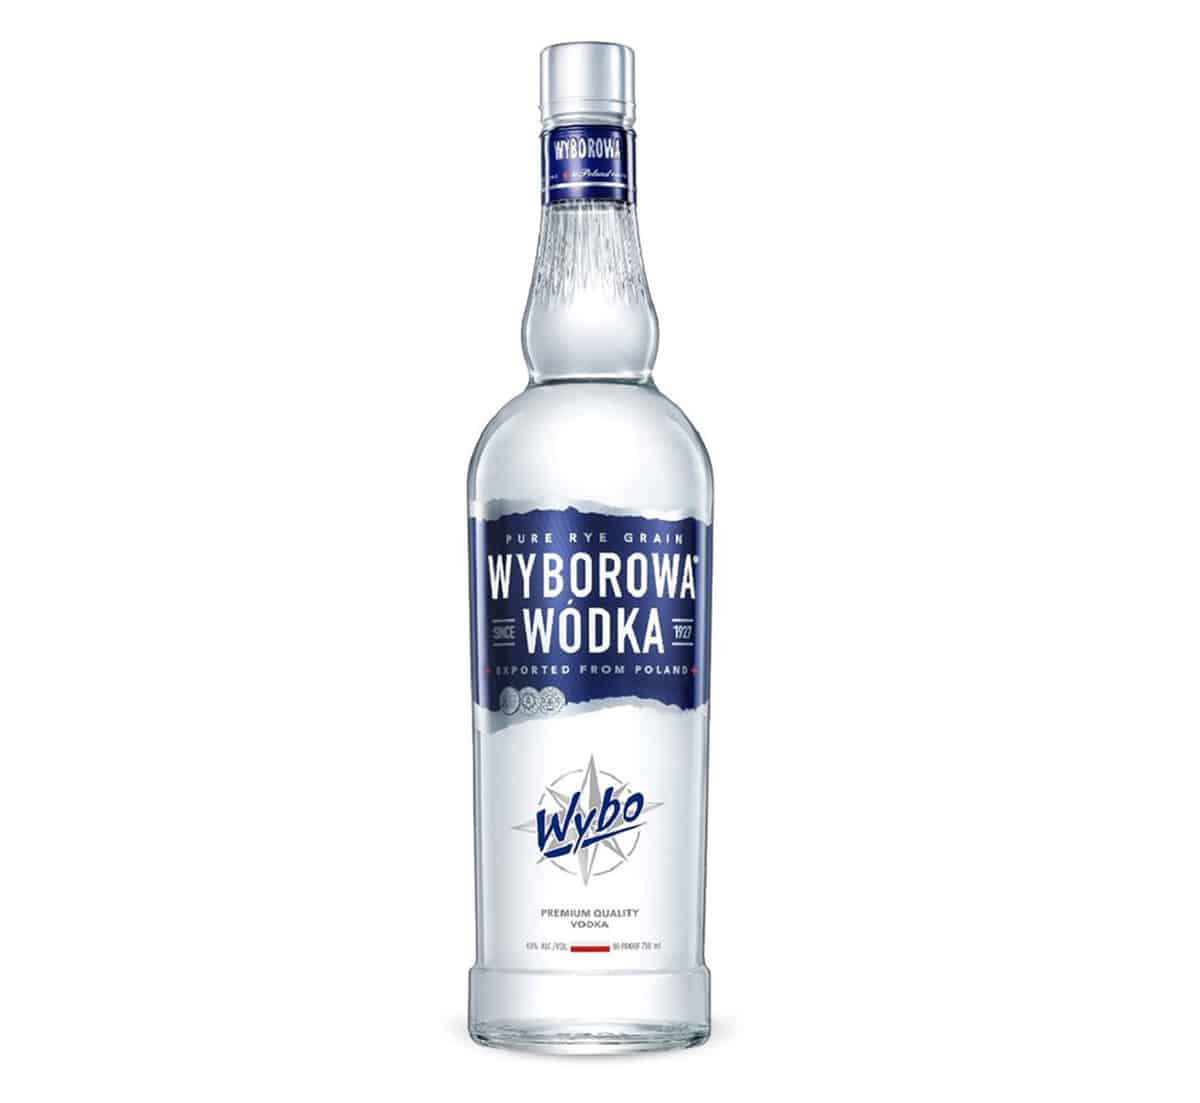 wyborowa-vodka